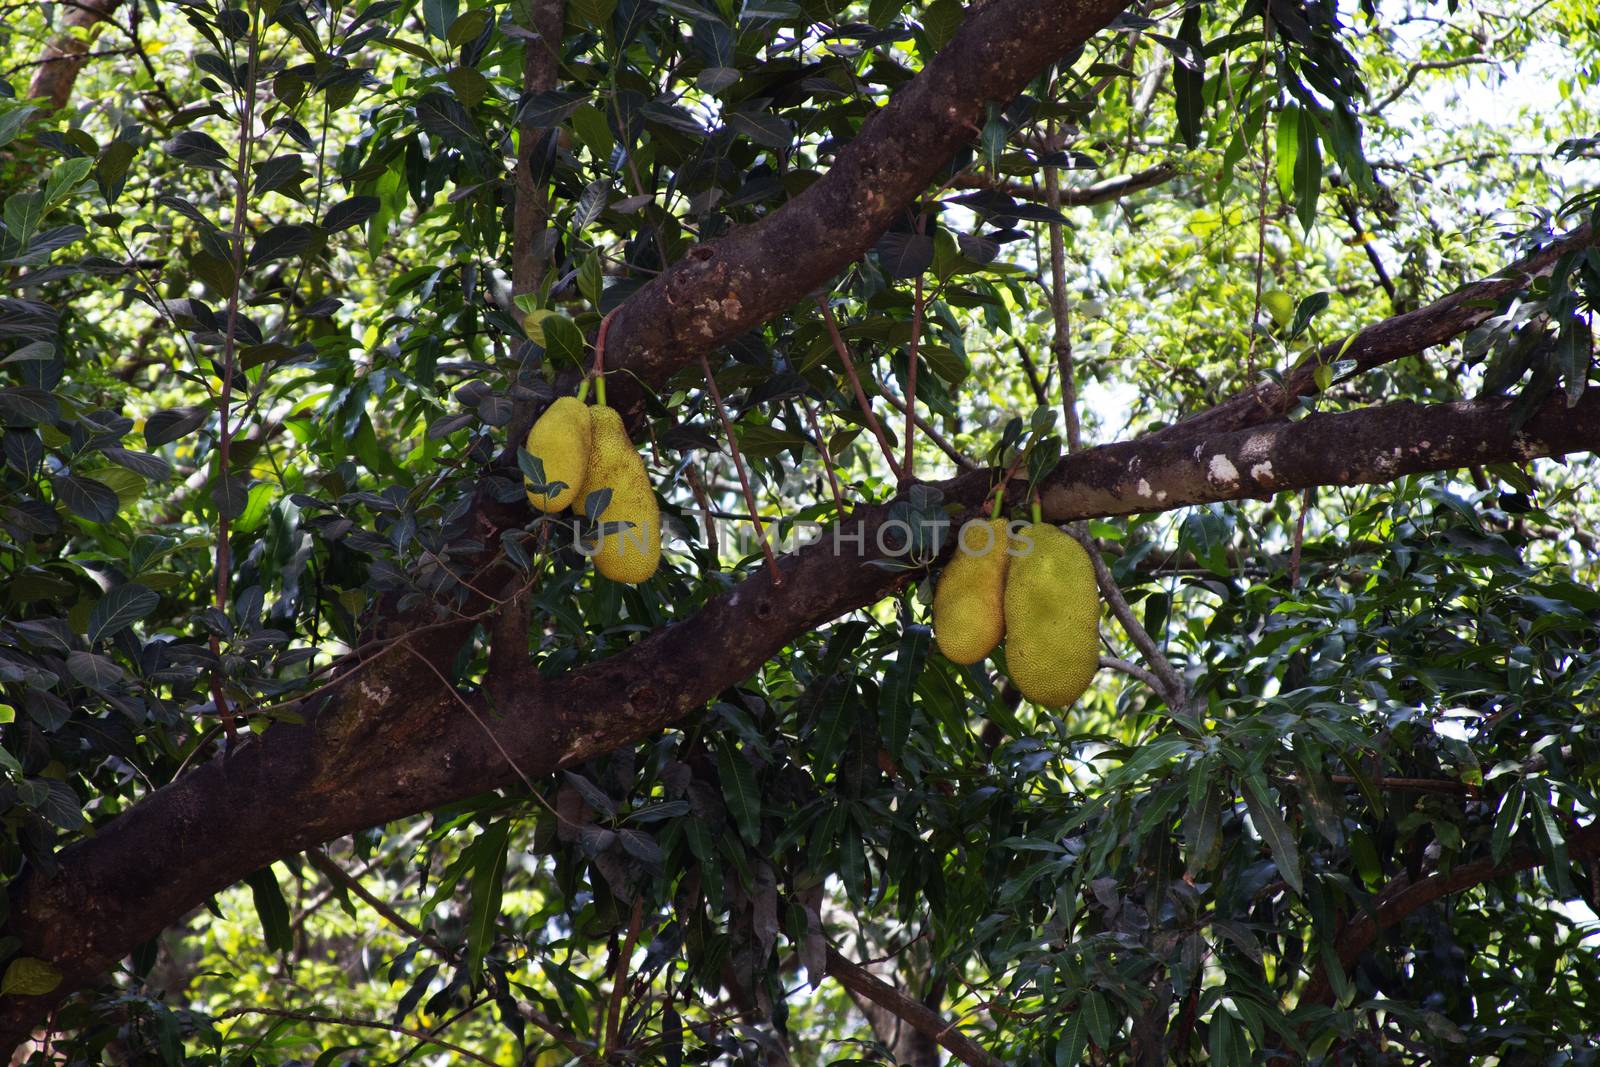 Tree with large fruits of a jackfruit. India Goa.